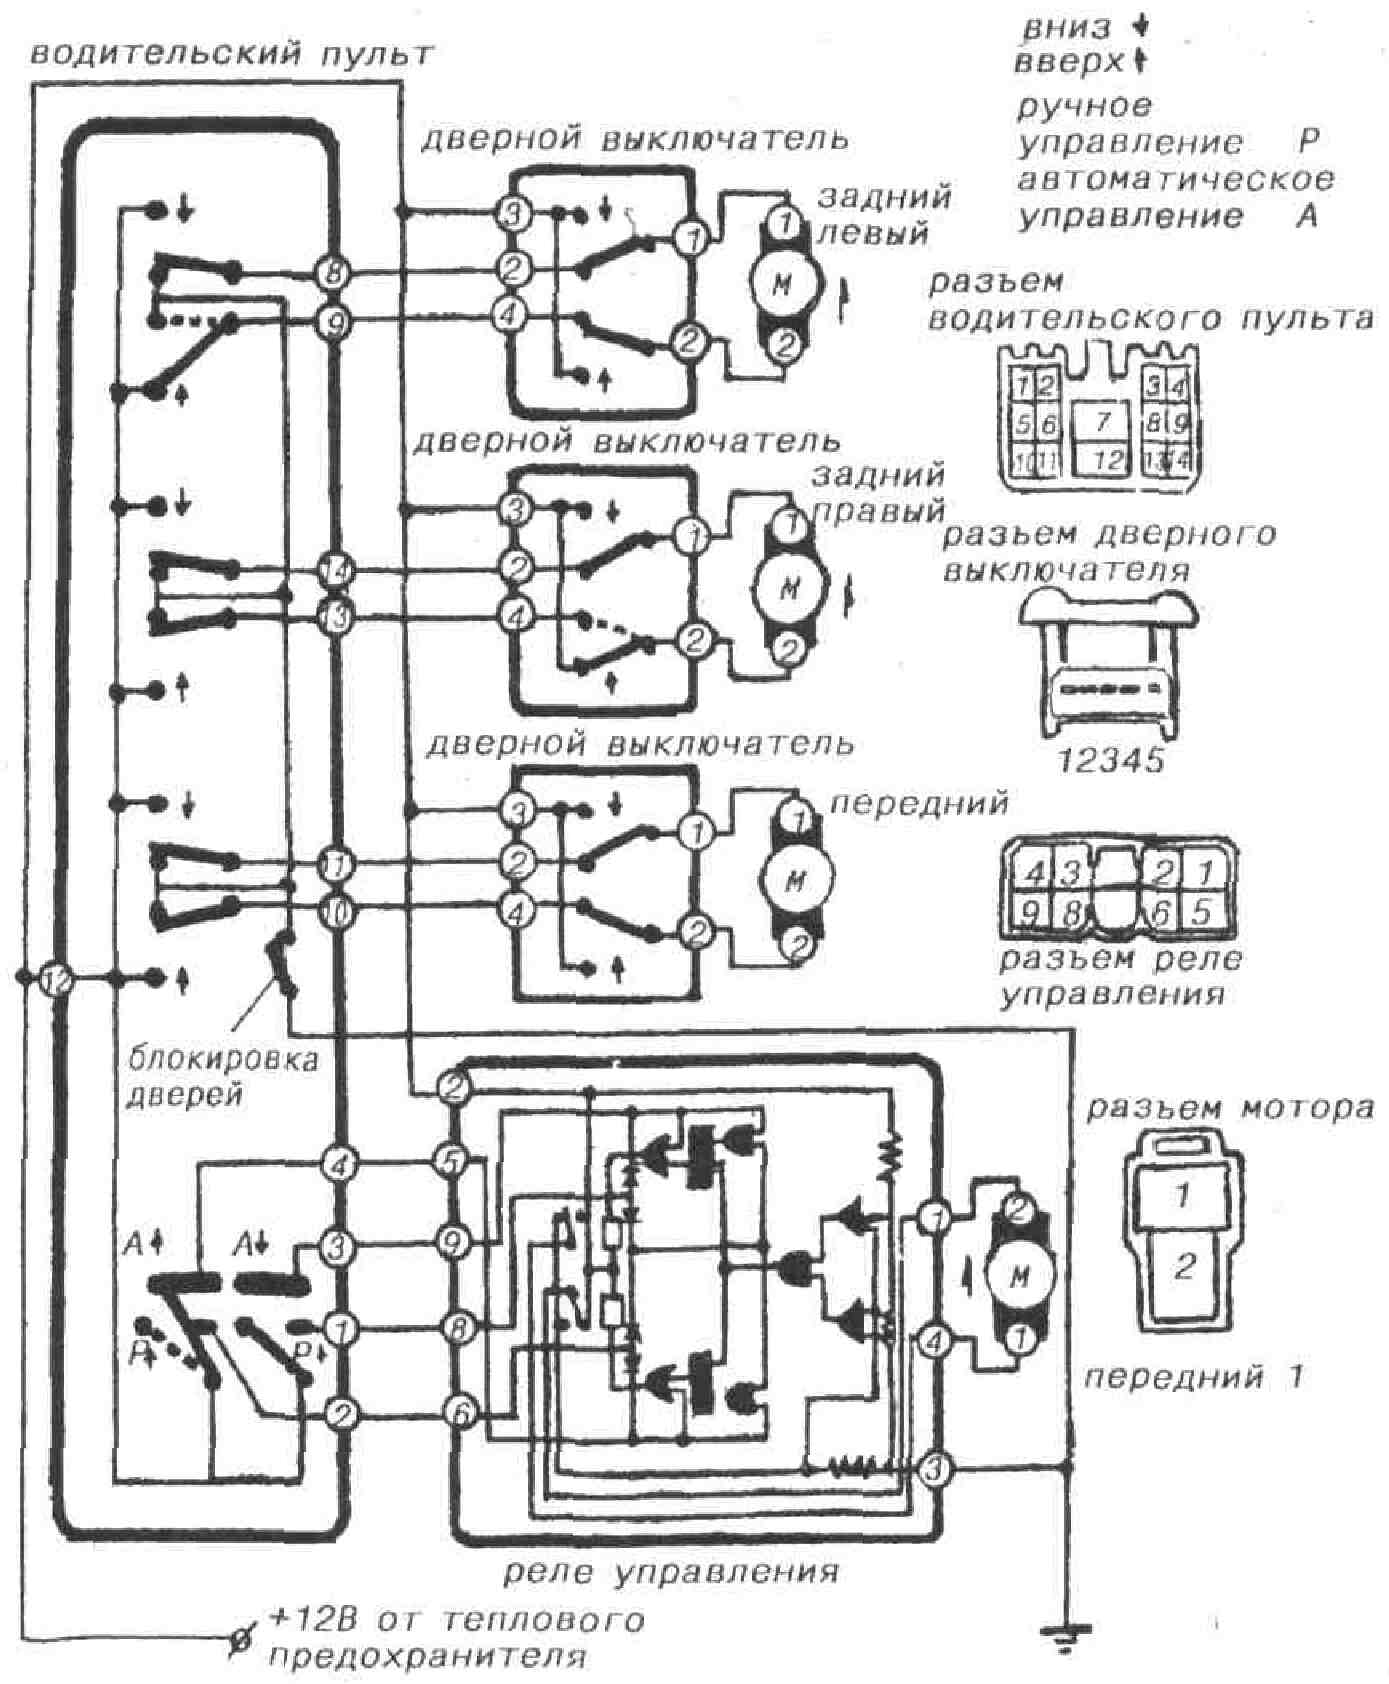 Схема работы указателя температуры двигателя